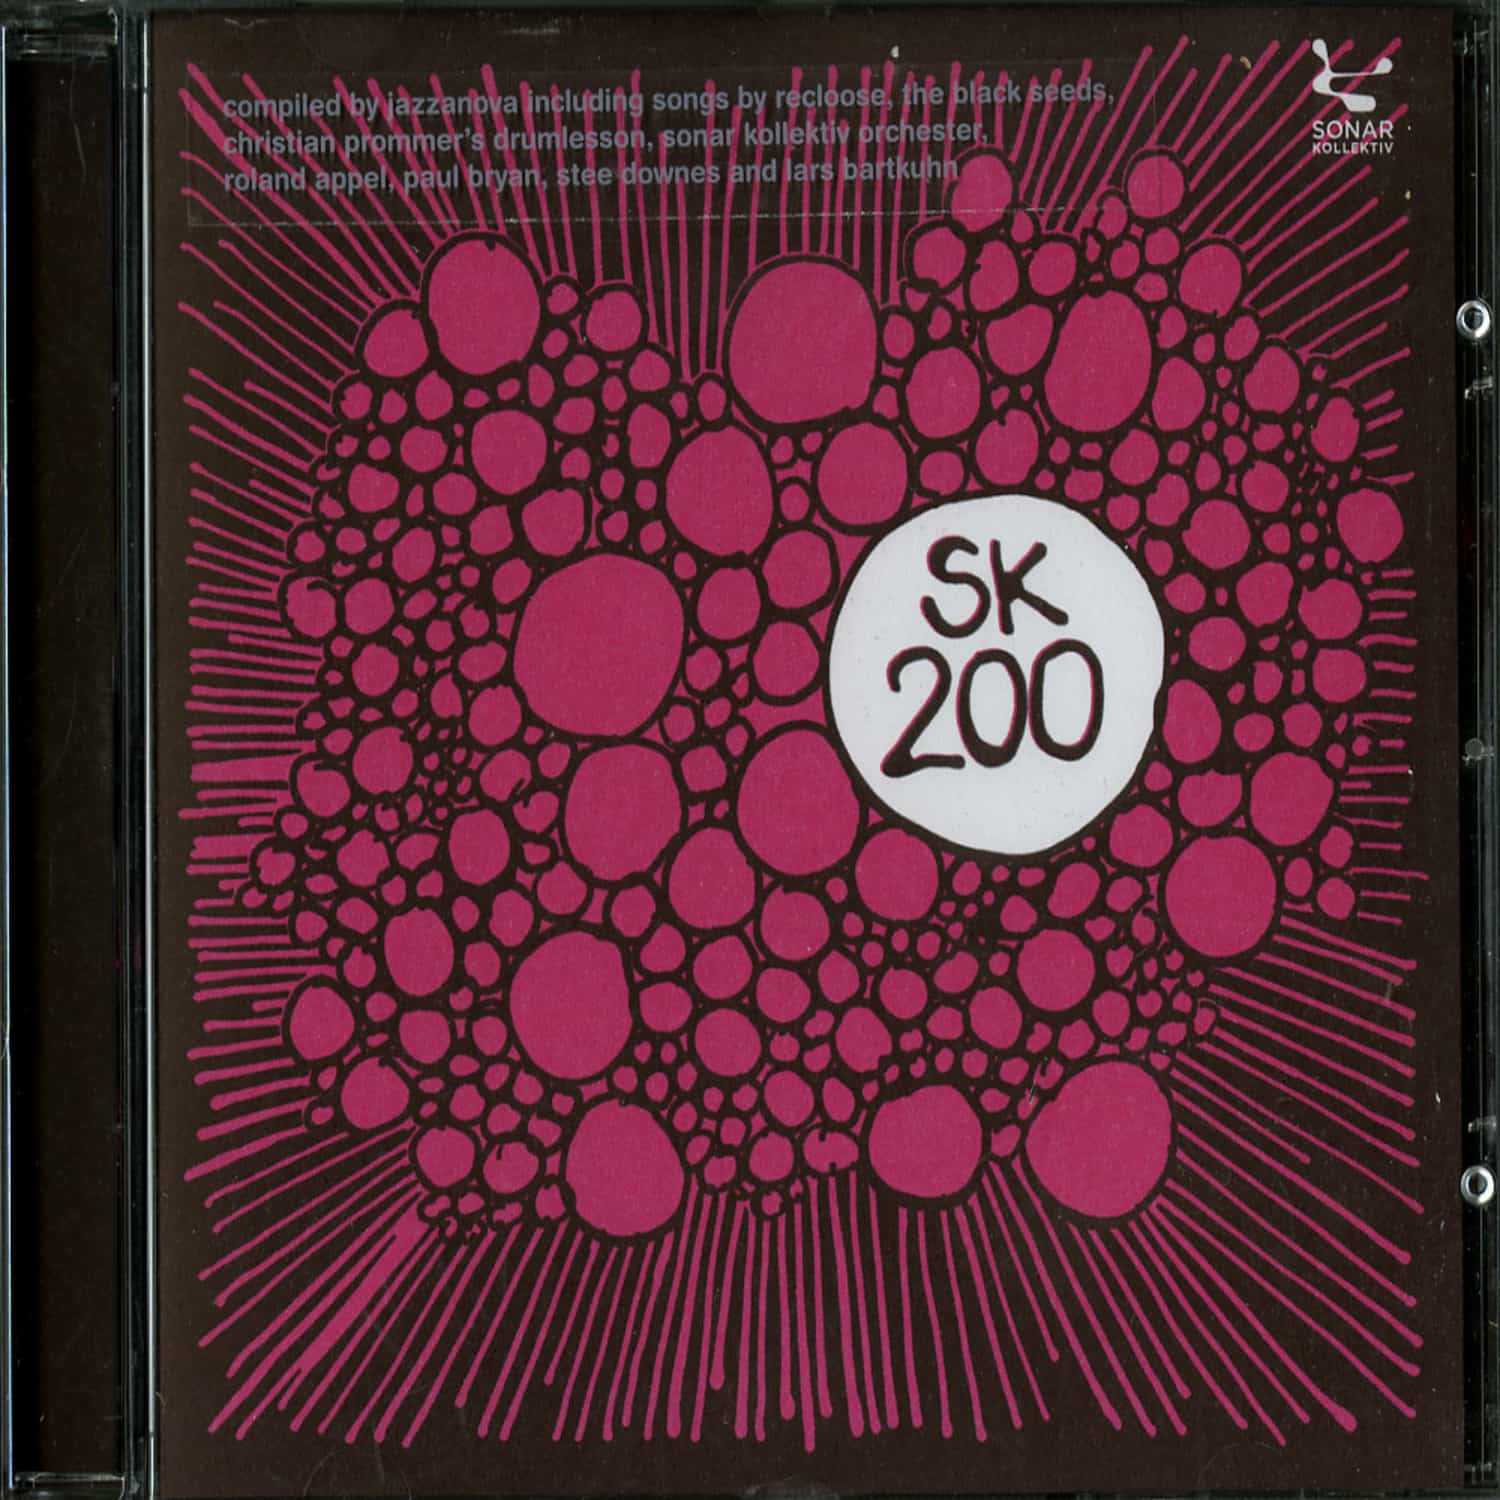 Jazzanova - SK 200 